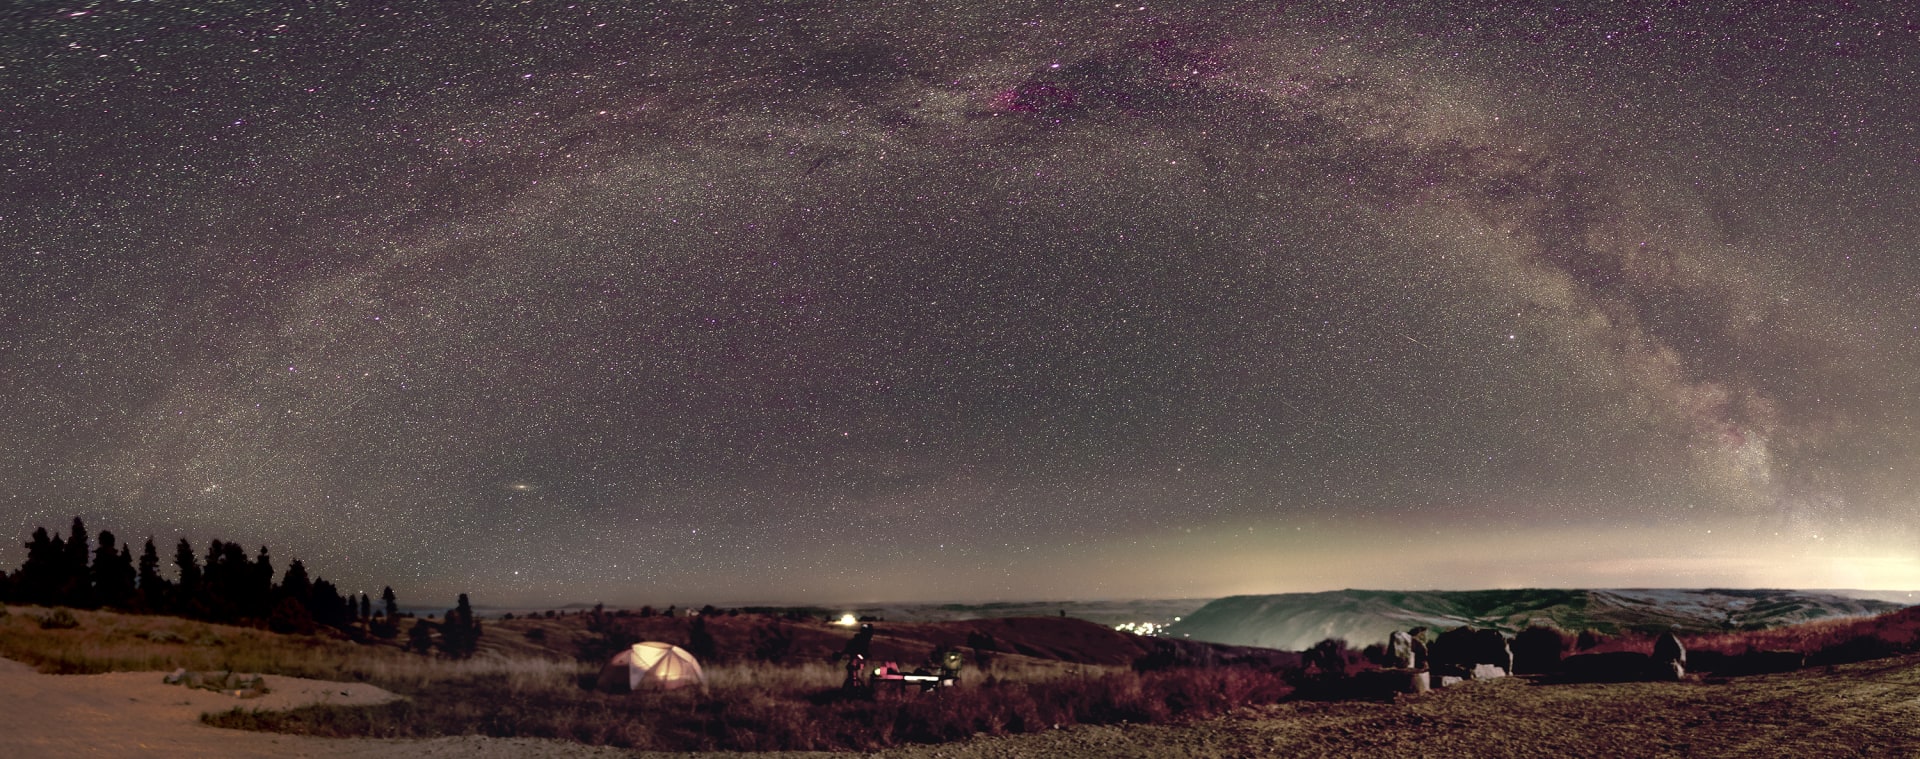 Coyote Estates campsite at night.